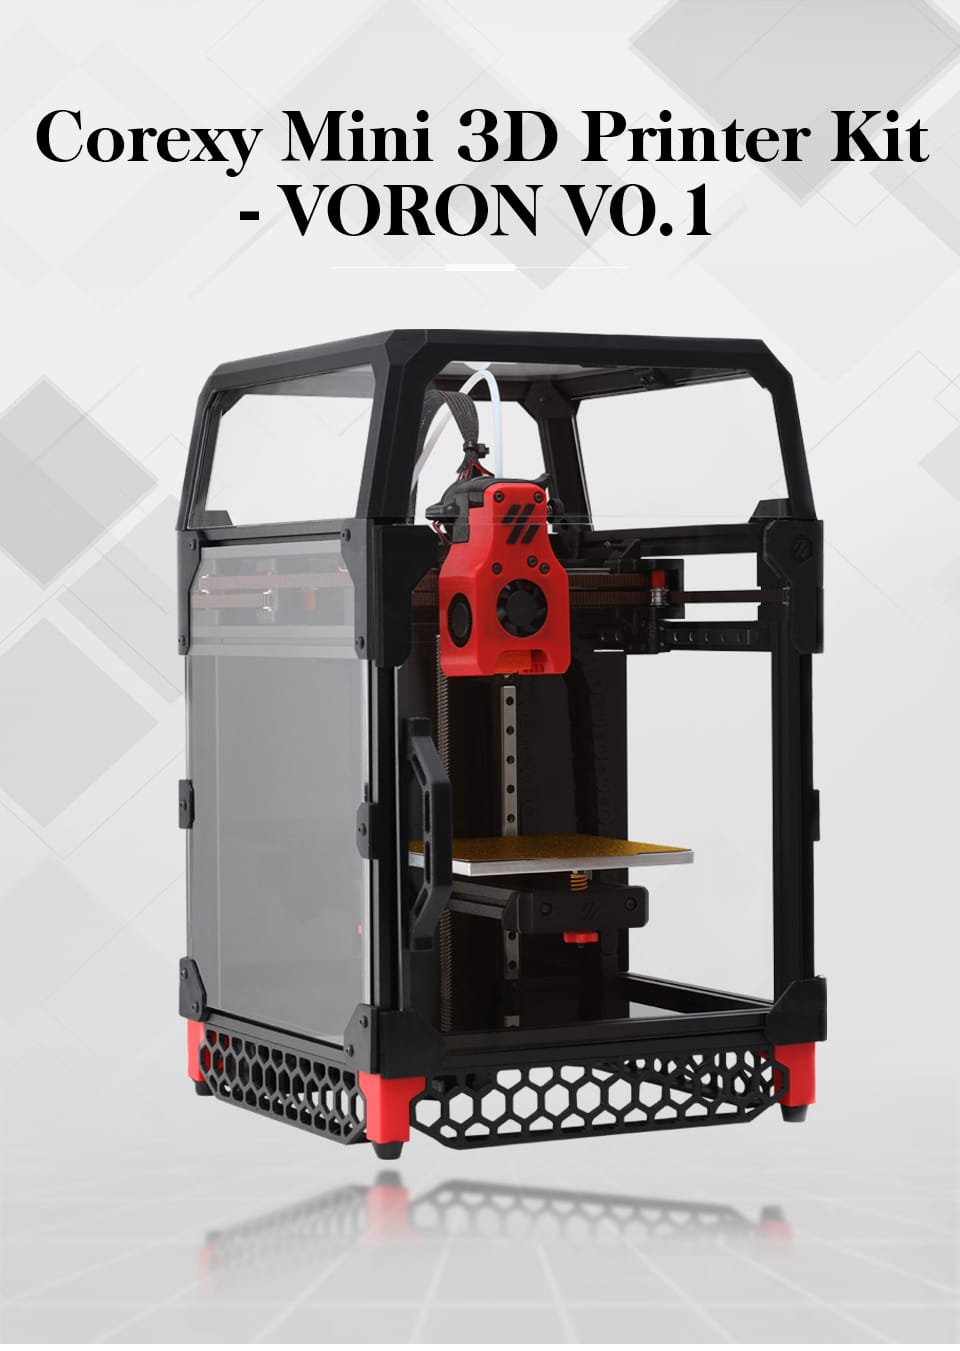 Voron V0.1